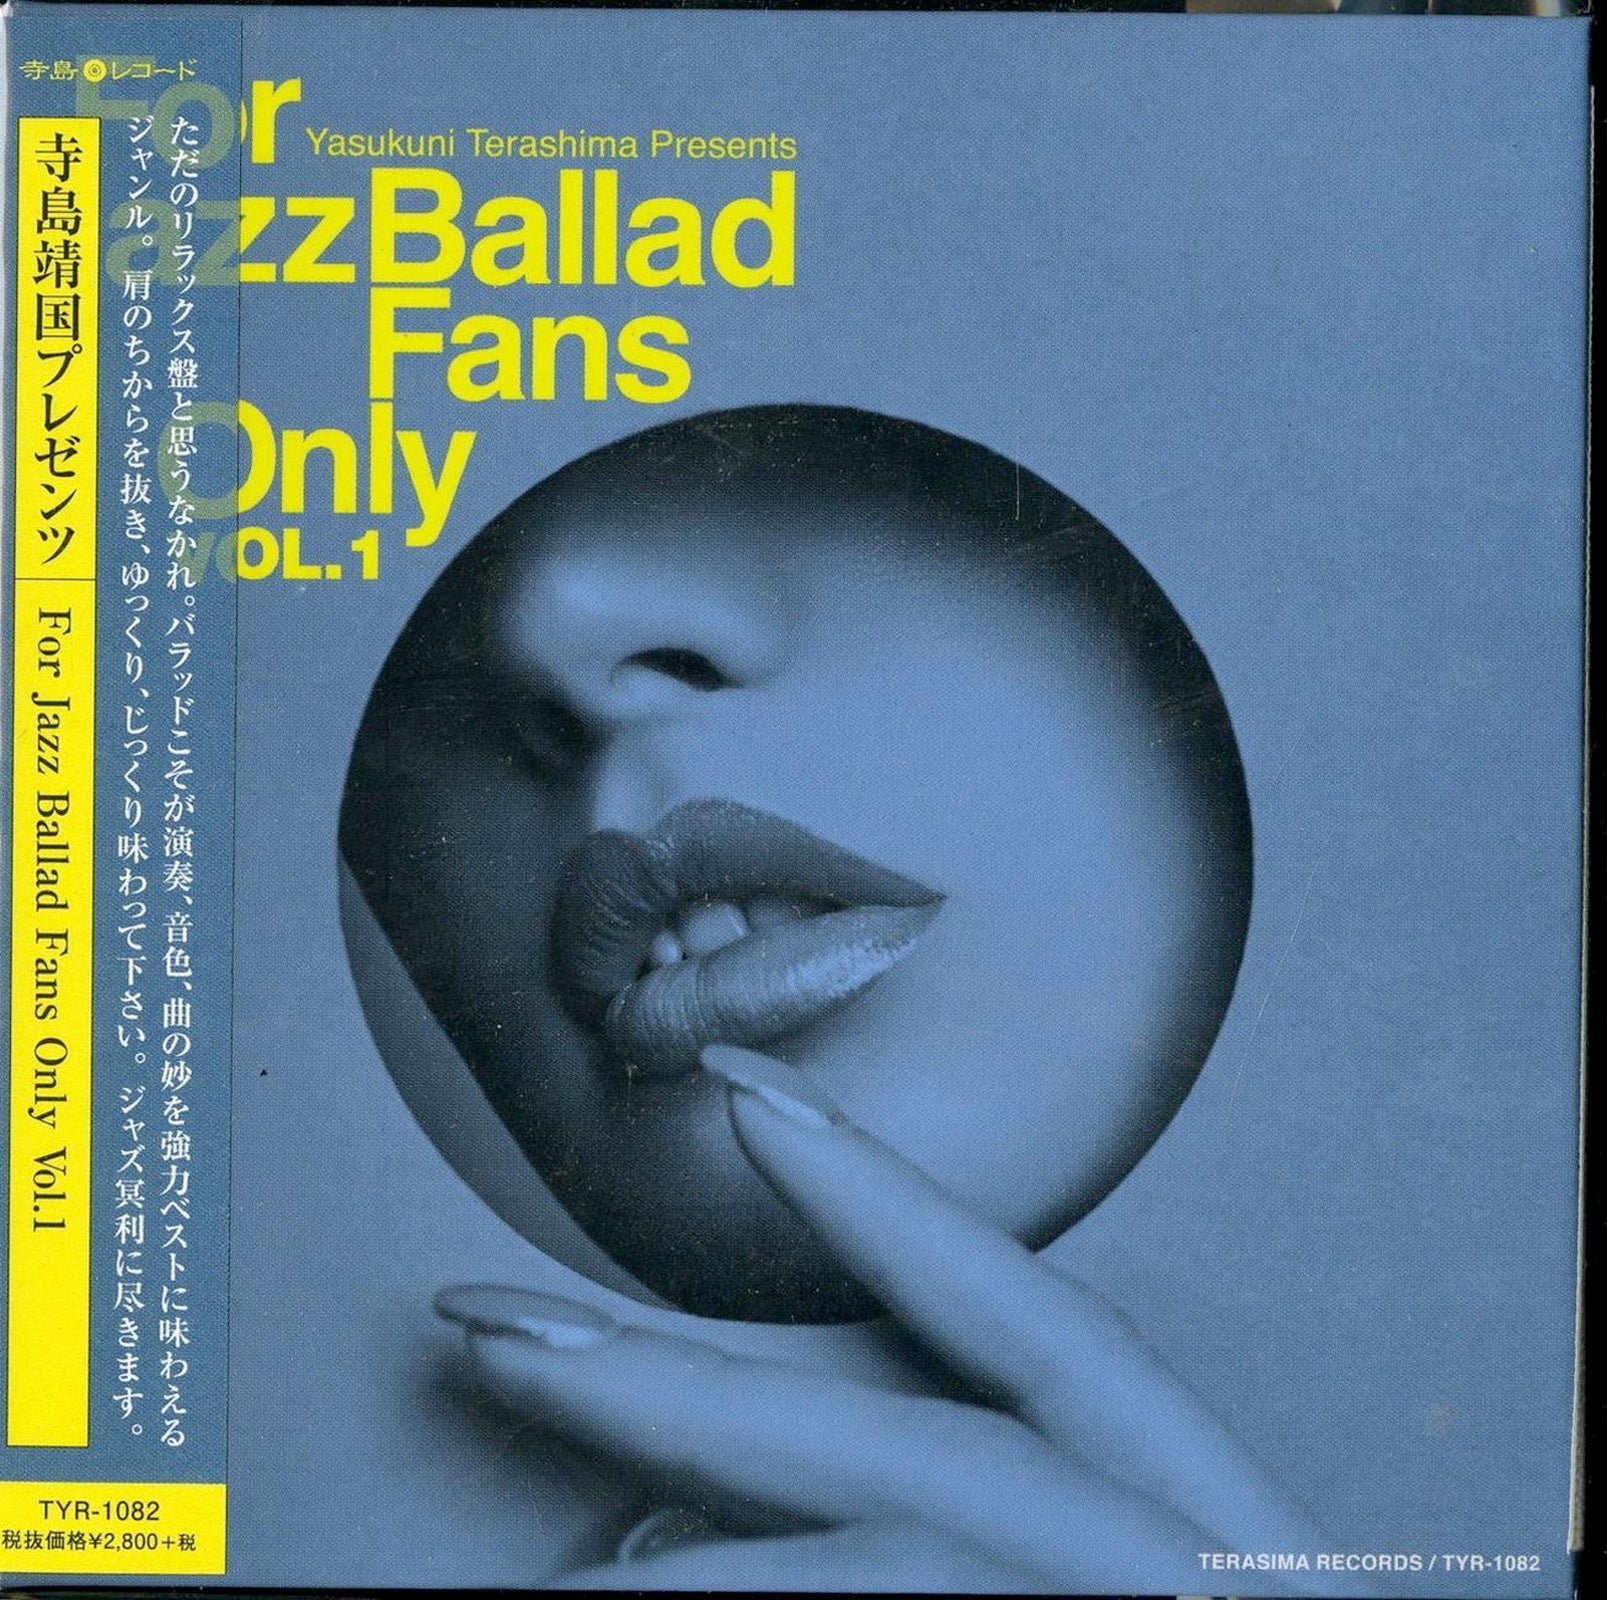 V.A. - For Jazz Ballad Fans Only Vol.1 - Japan Mini LP CD – CDs